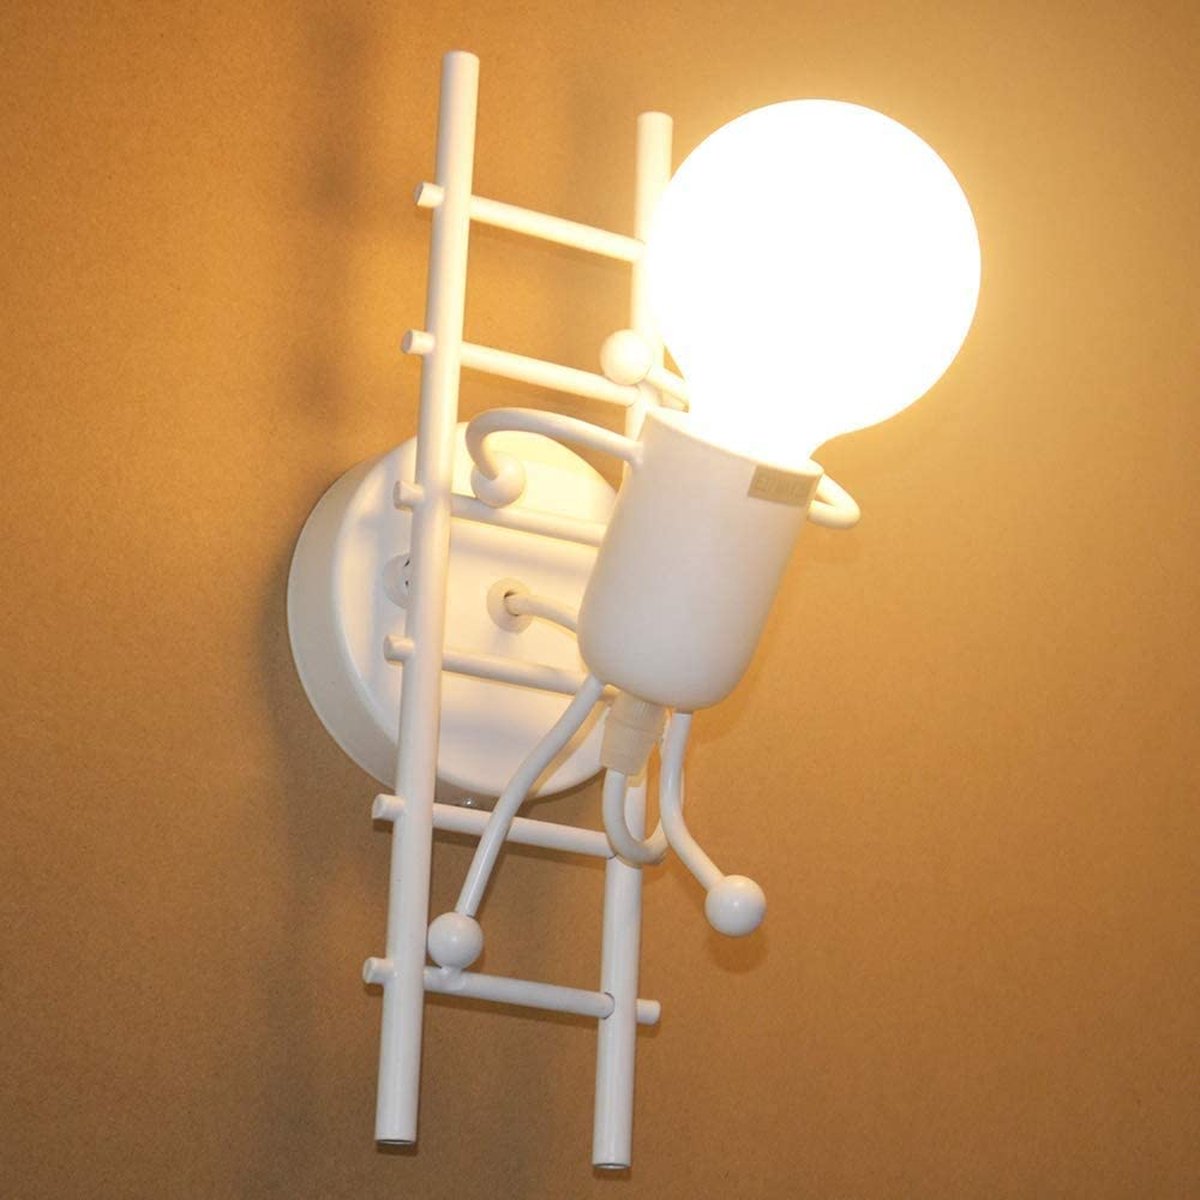 Humanoid interieur wandmuurlicht, moderne industriële wandlamp, eenvoudige stijl wandlamp voor de slaapkamerlounge slaapkamer, 220V, E27 lamp niet inbegrepen